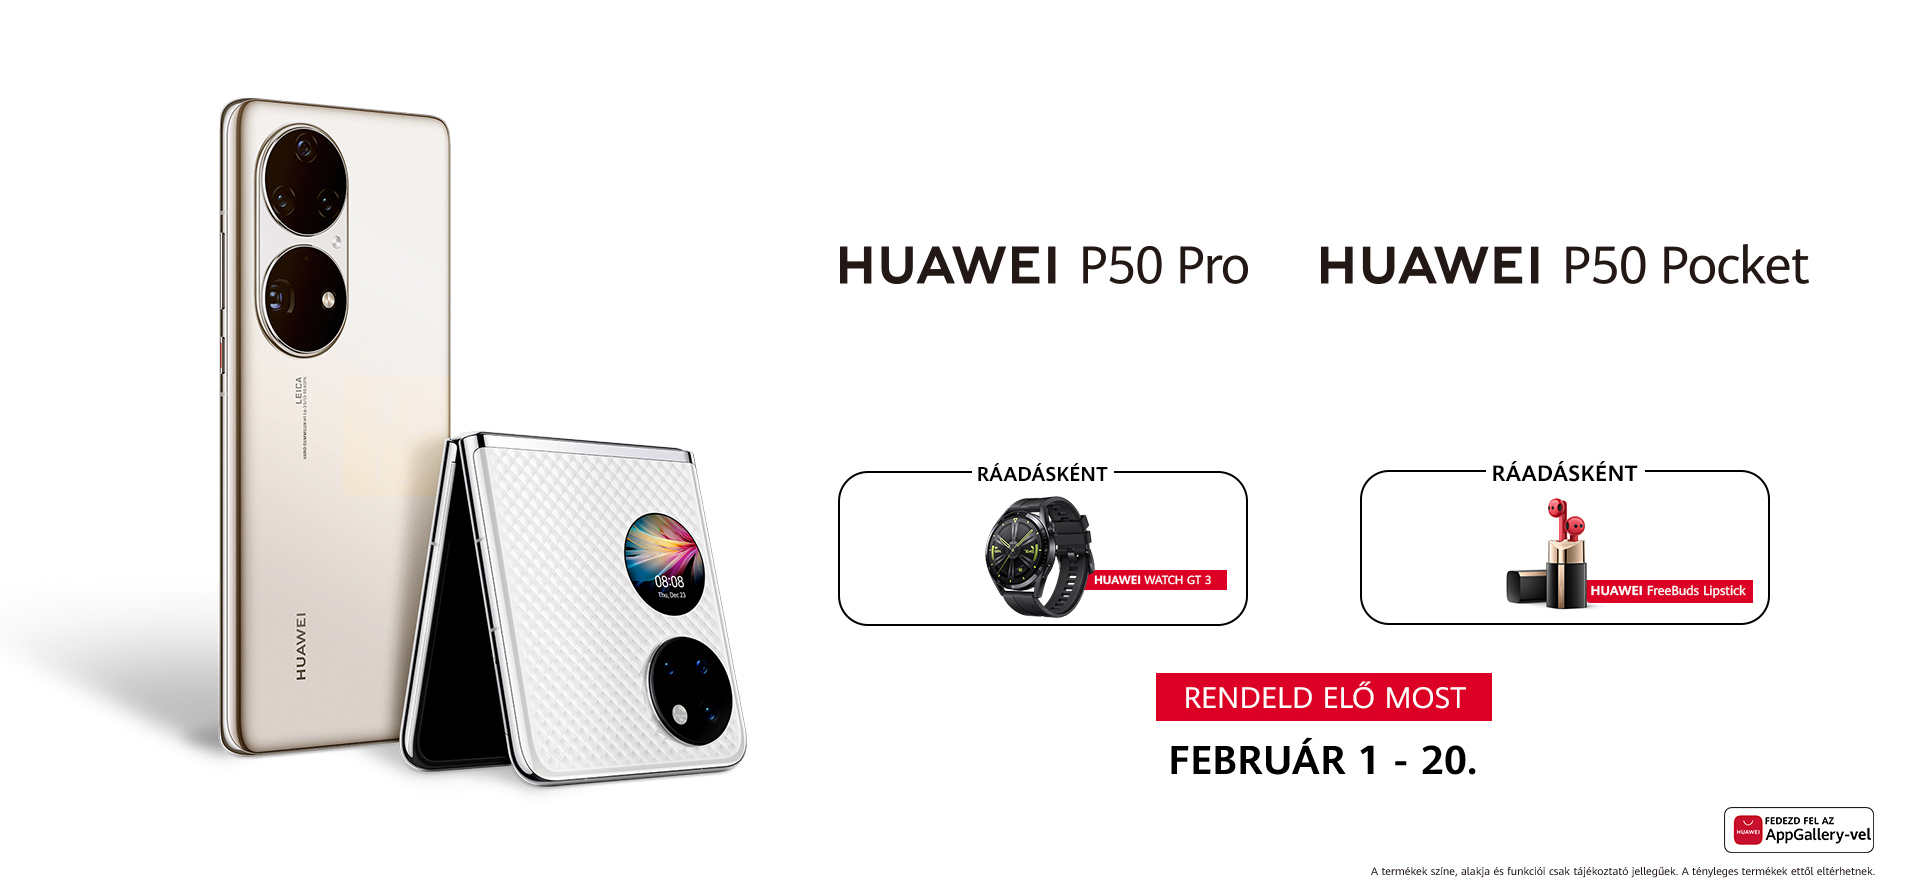 HUAWEI P50 Pro | P50 Pocket